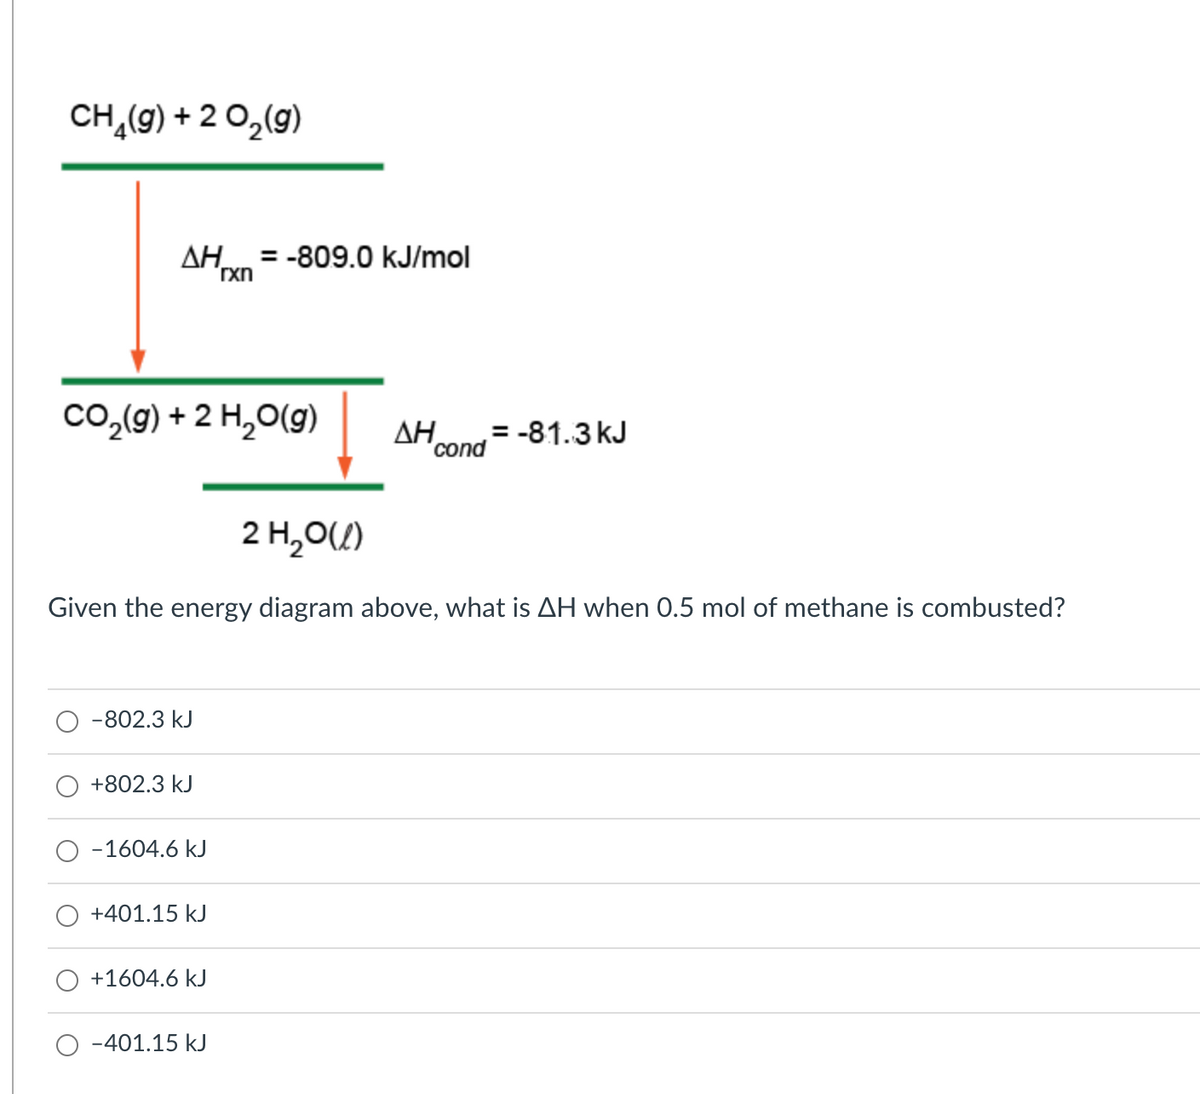 CH,(9) + 2 O,(g)
AH = -809.0 kJ/mol
Co,(9) + 2 H,O(g)
ΔΗ.
cond
= -81.3 kJ
2 H,0(/)
Given the energy diagram above, what is AH when 0.5 mol of methane is combusted?
-802.3 kJ
+802.3 kJ
-1604.6 kJ
+401.15 kJ
+1604.6 kJ
-401.15 kJ
